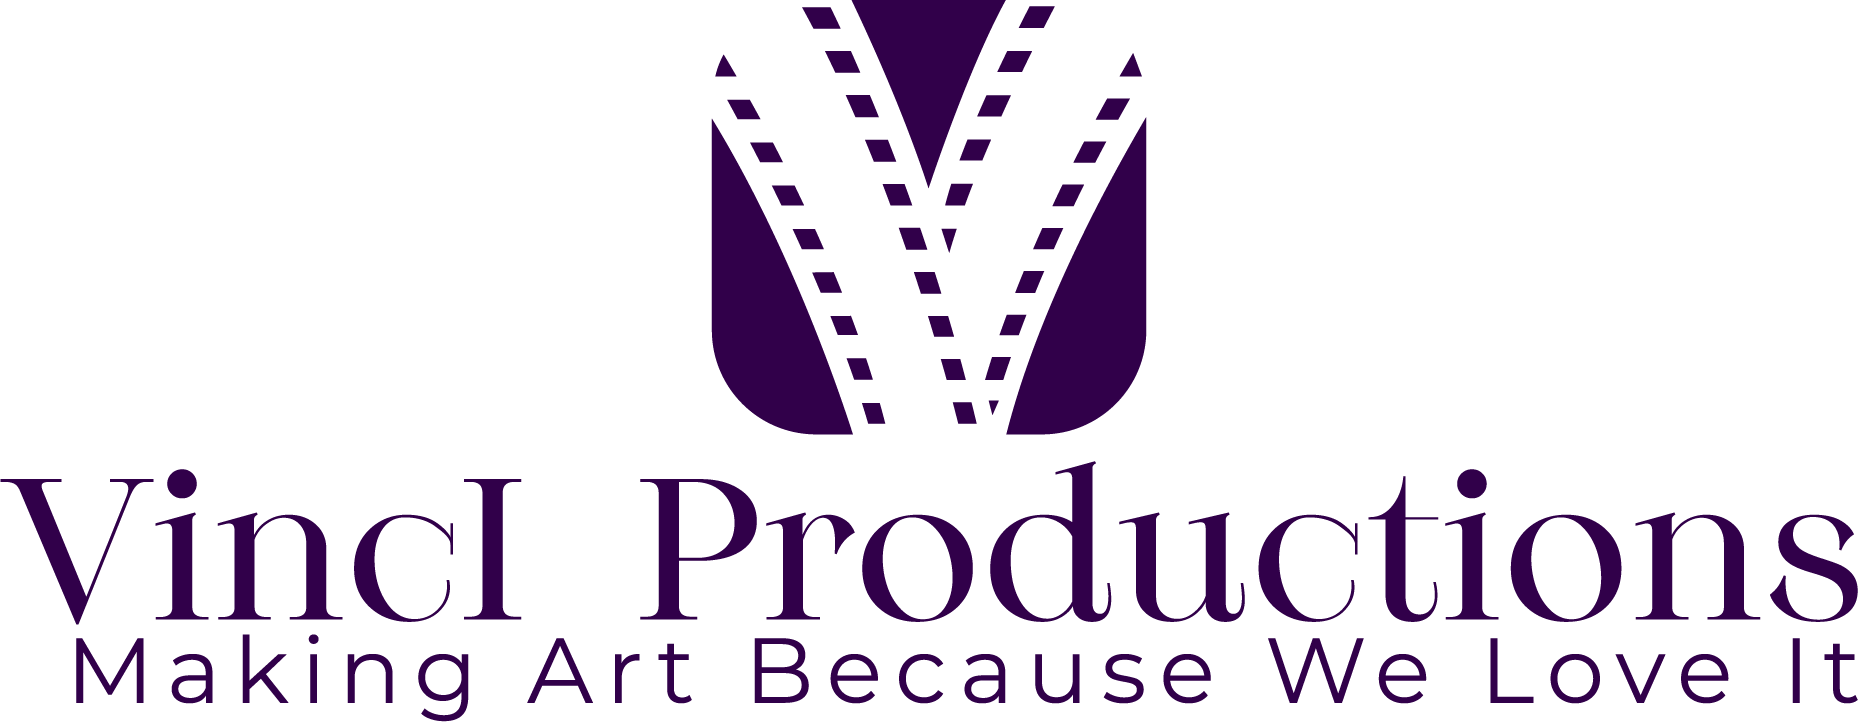 VincI Productions